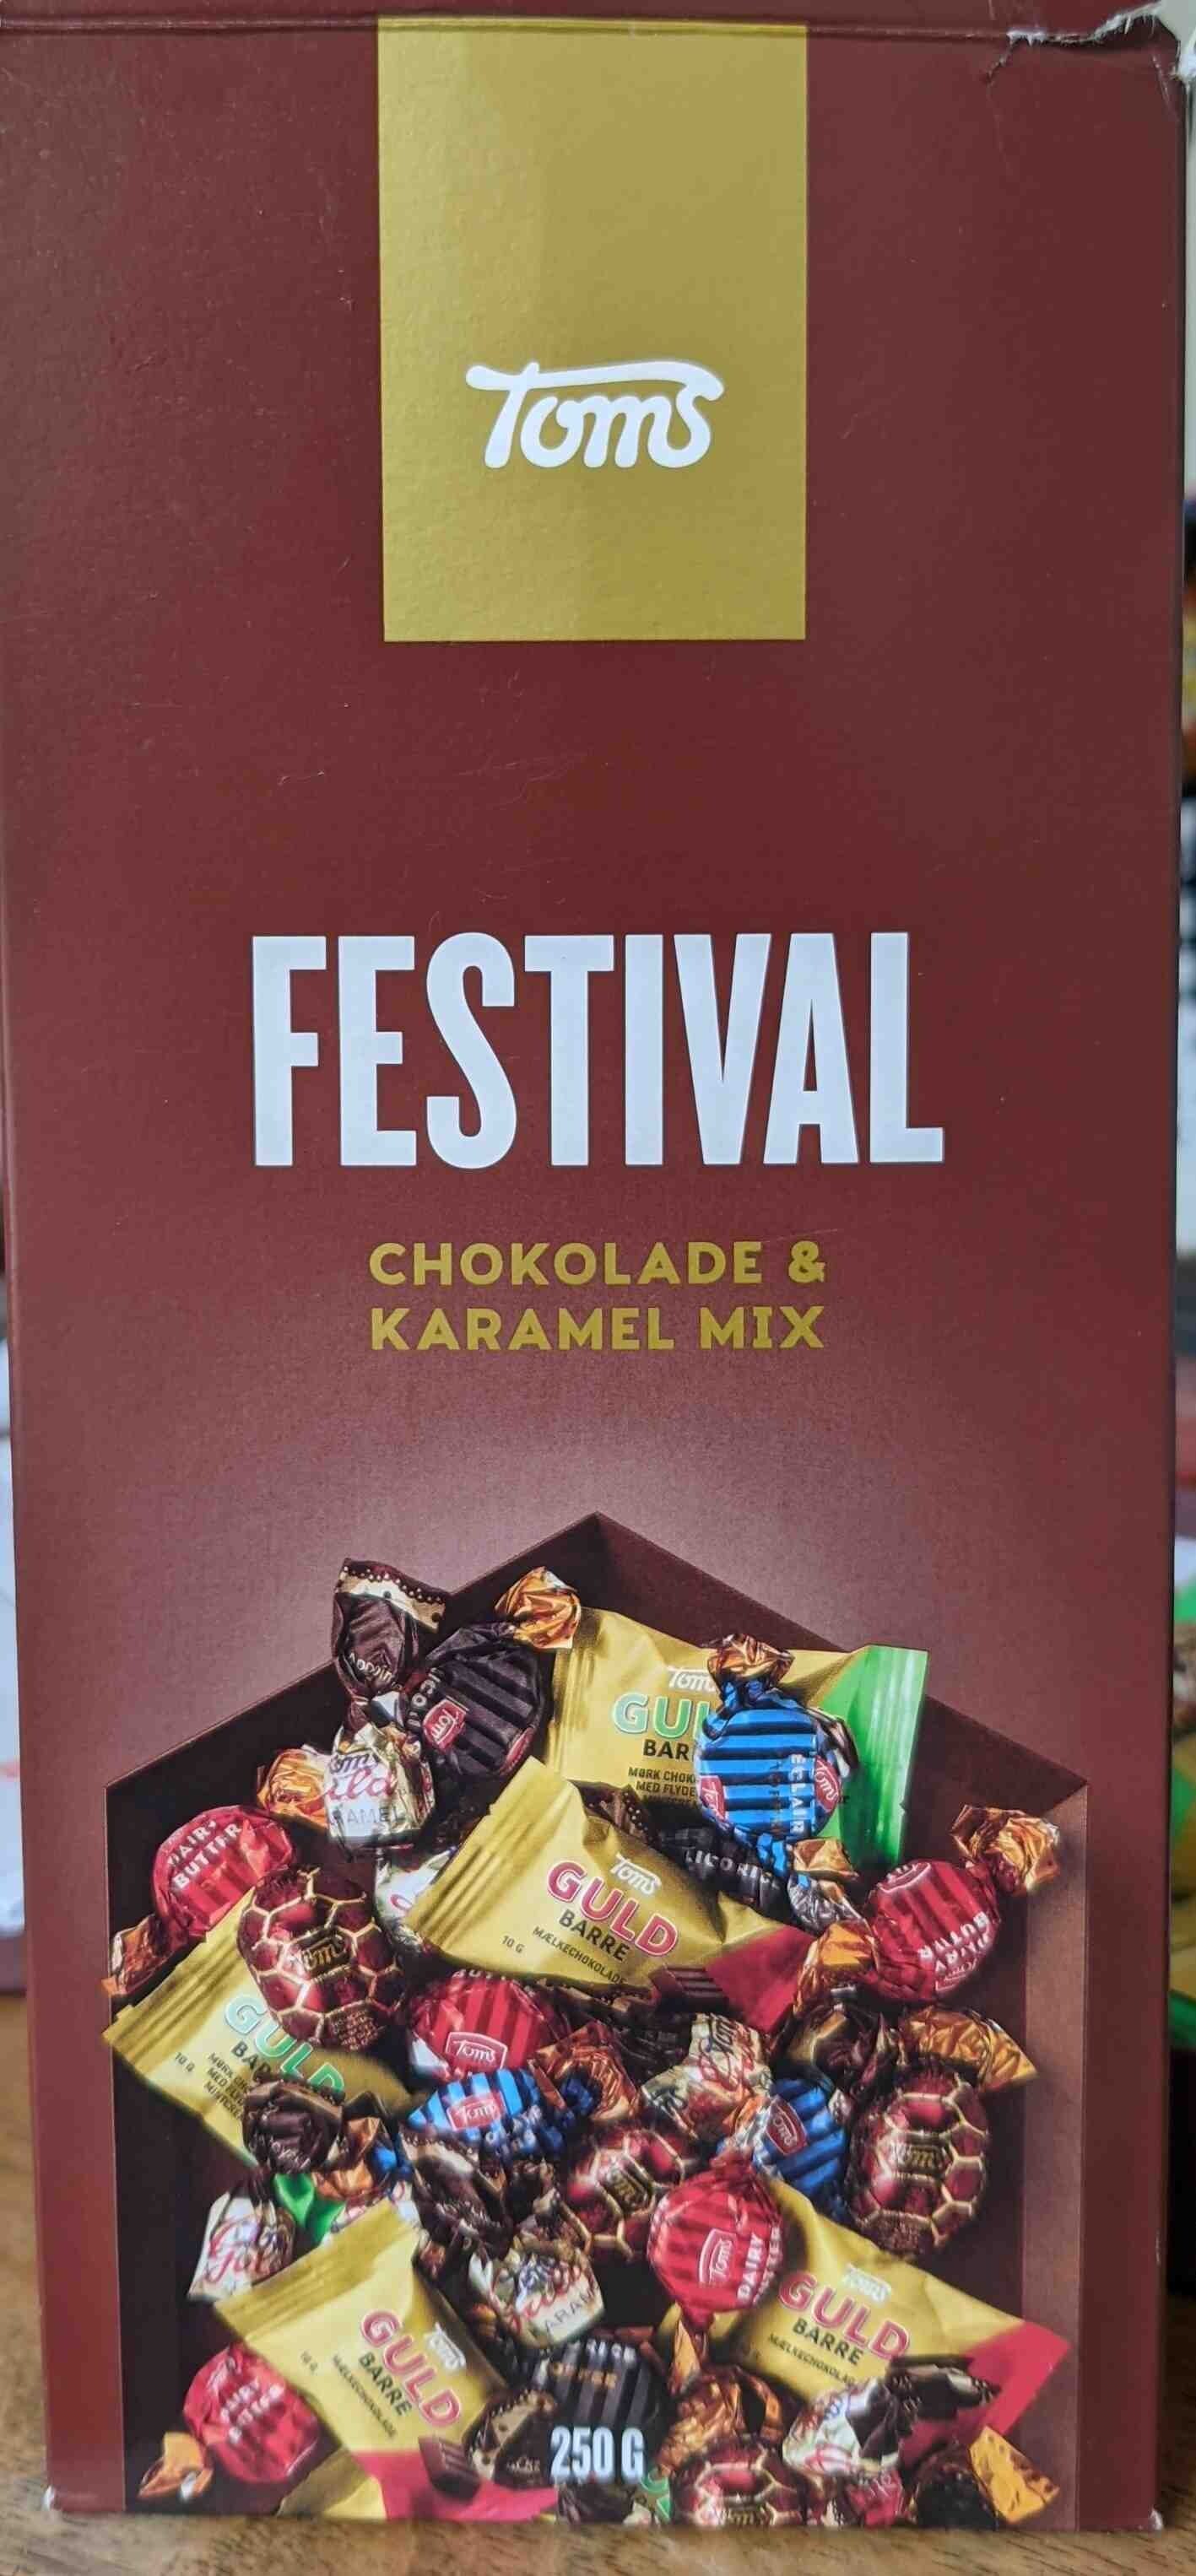 Festival chokolade & karamel mix - Produkt - en